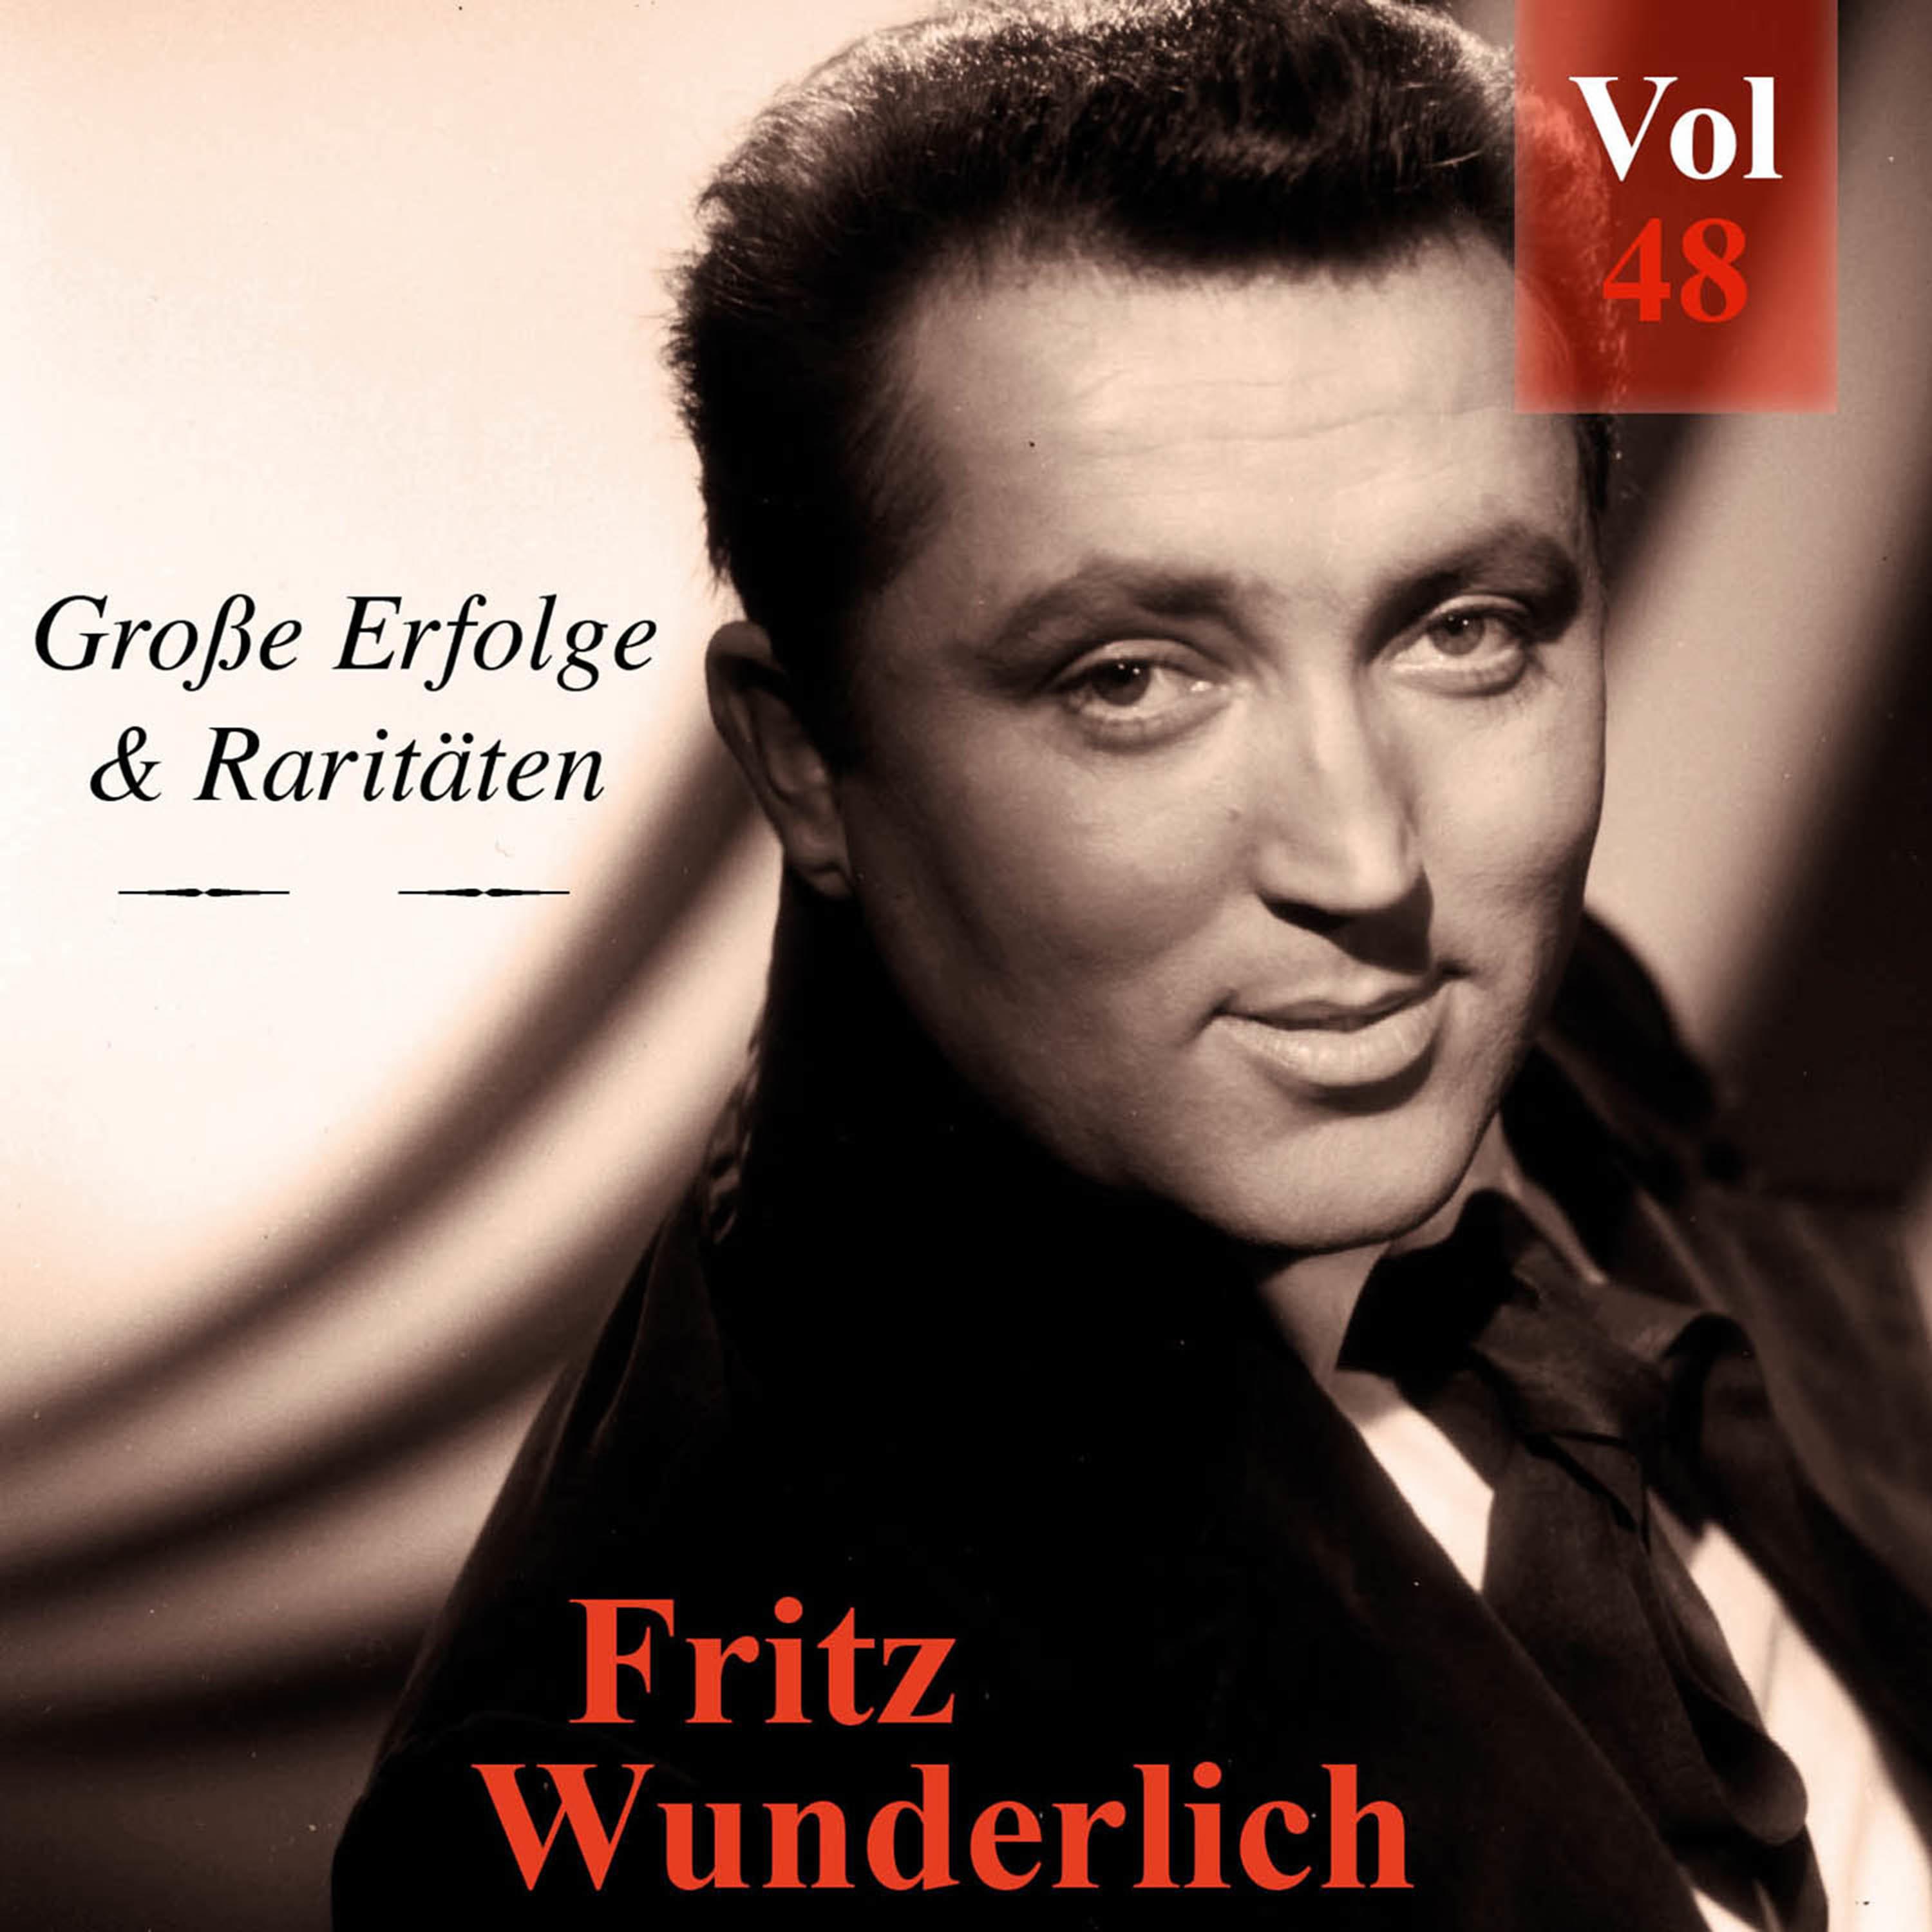 Fritz Wunderlich  Gro e Erfolge  Rarit ten, Vol. 48